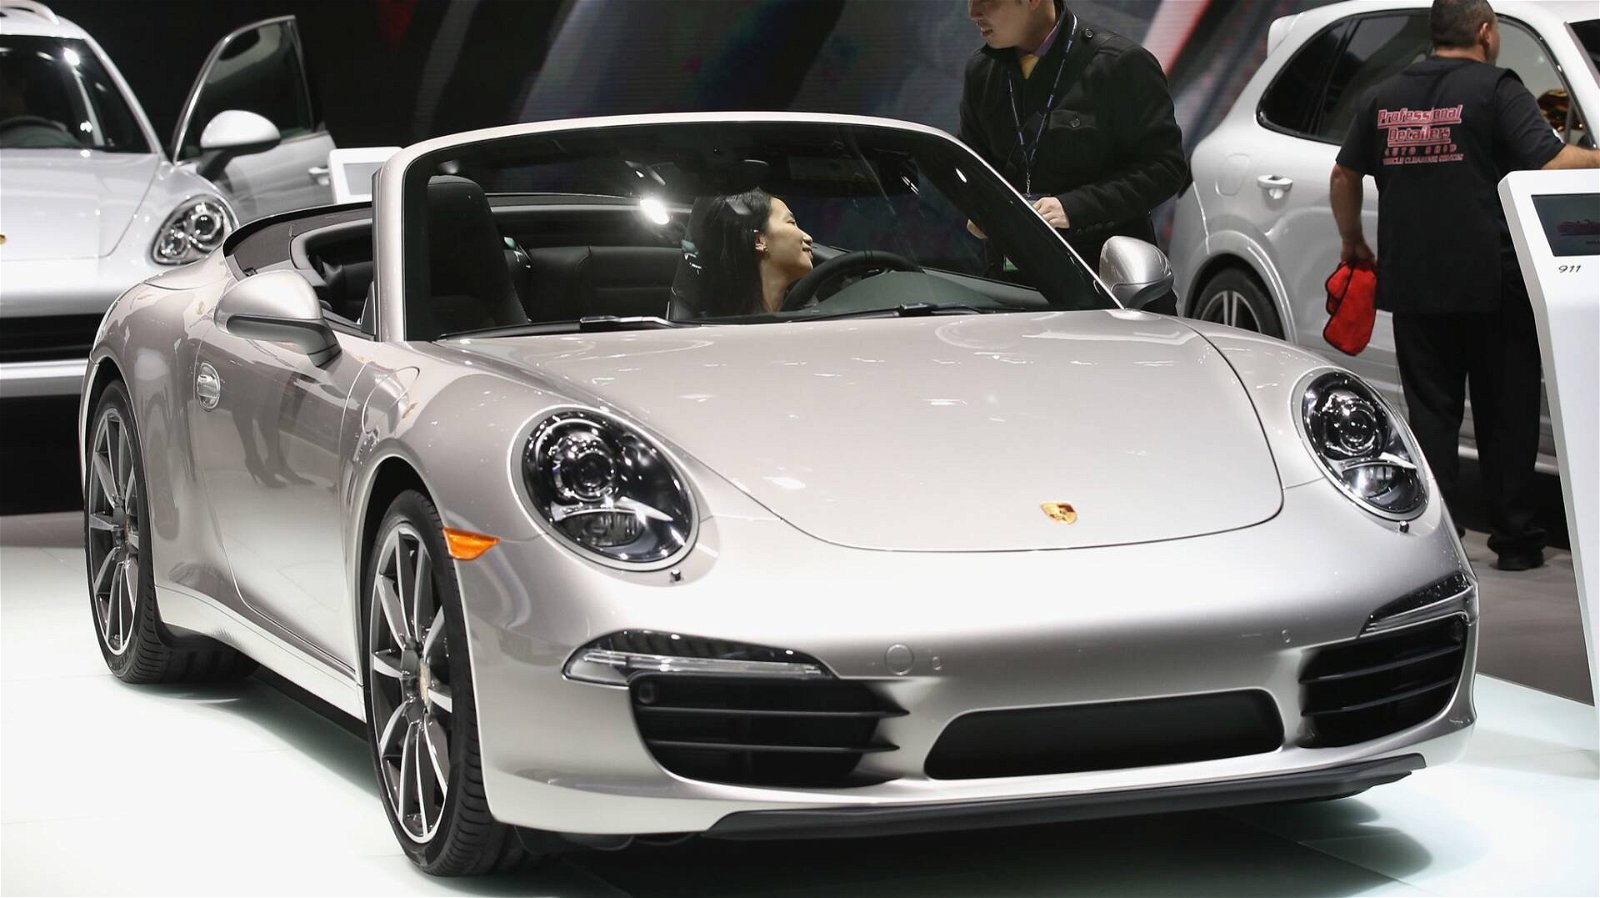 Immagine di Porsche: emissioni troppo alte, stop immediato vendita di alcuni modelli